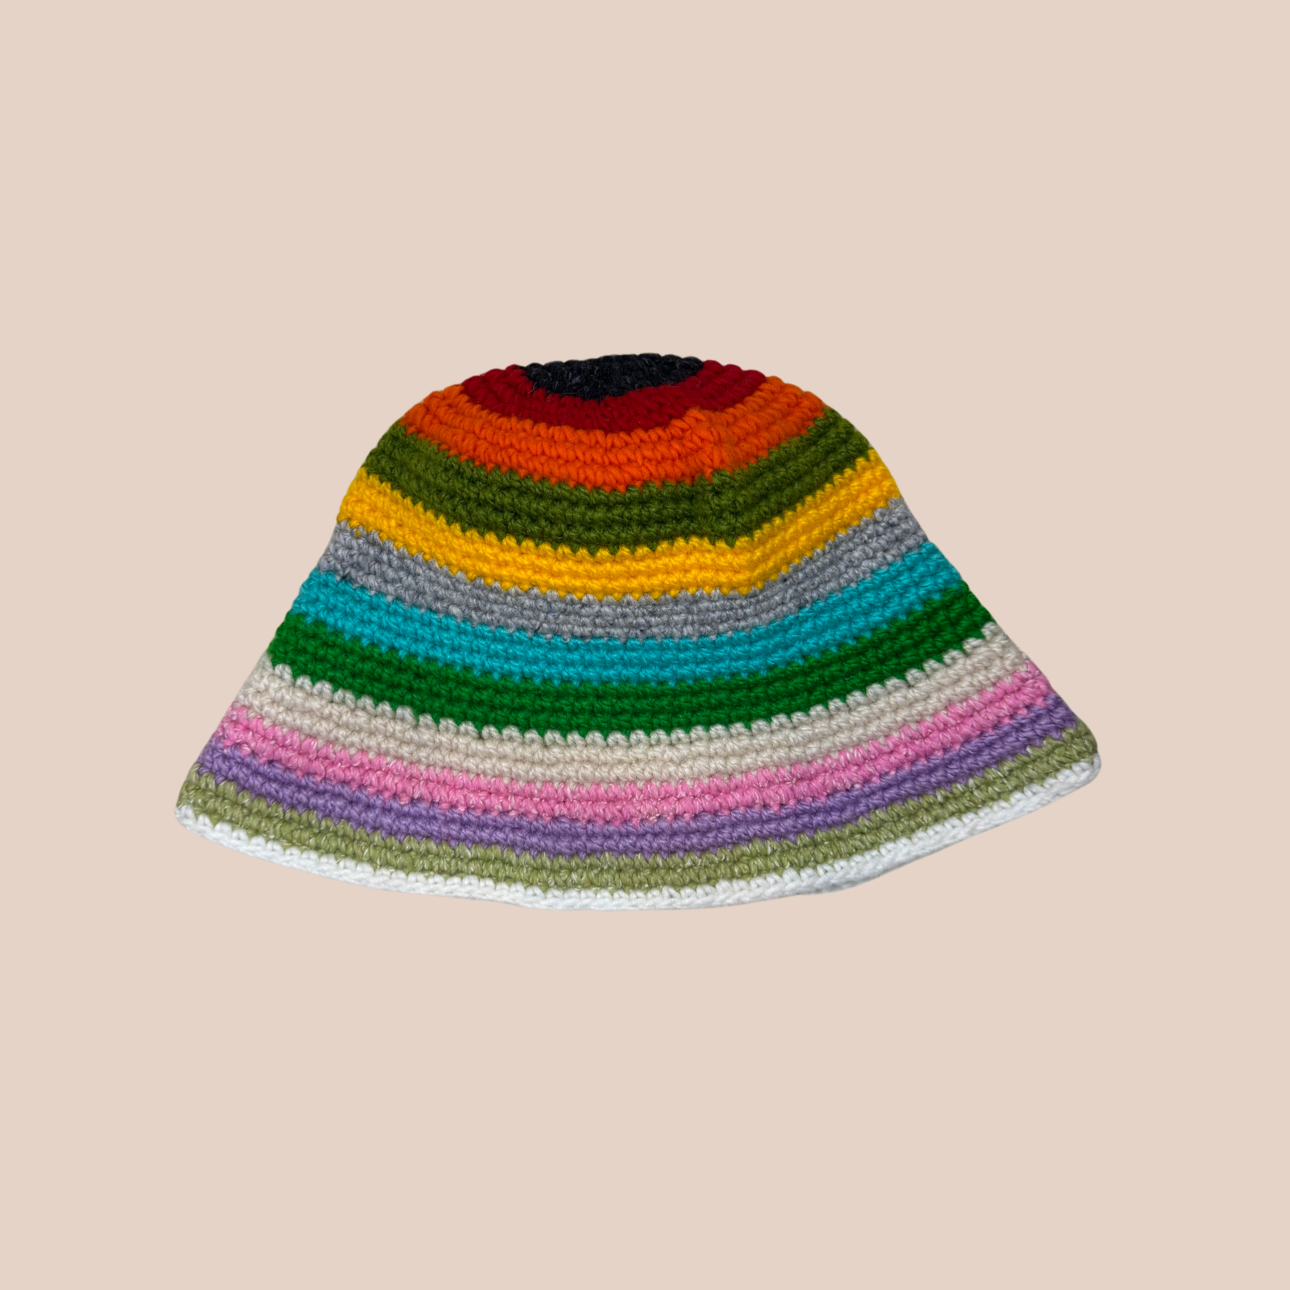 Un bucket hat raye crocheté en laine et acrylique, arborant des couleurs vives et audacieuses